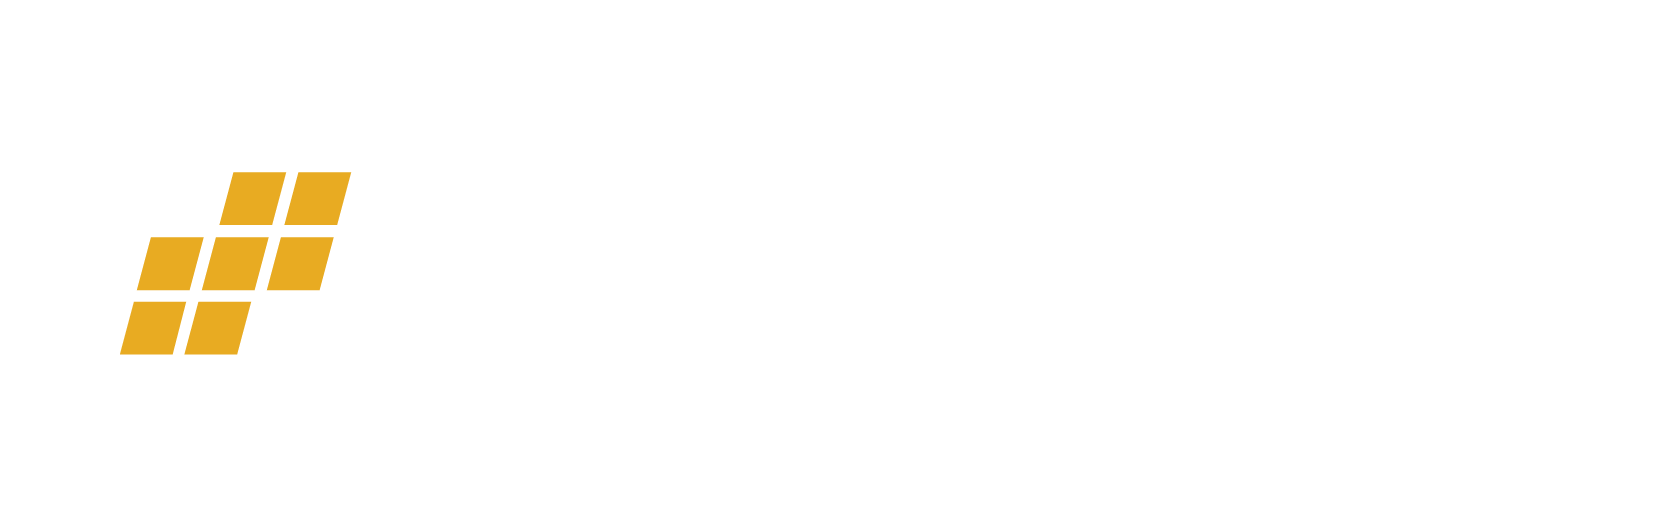 OLEDWorks - Full Color White